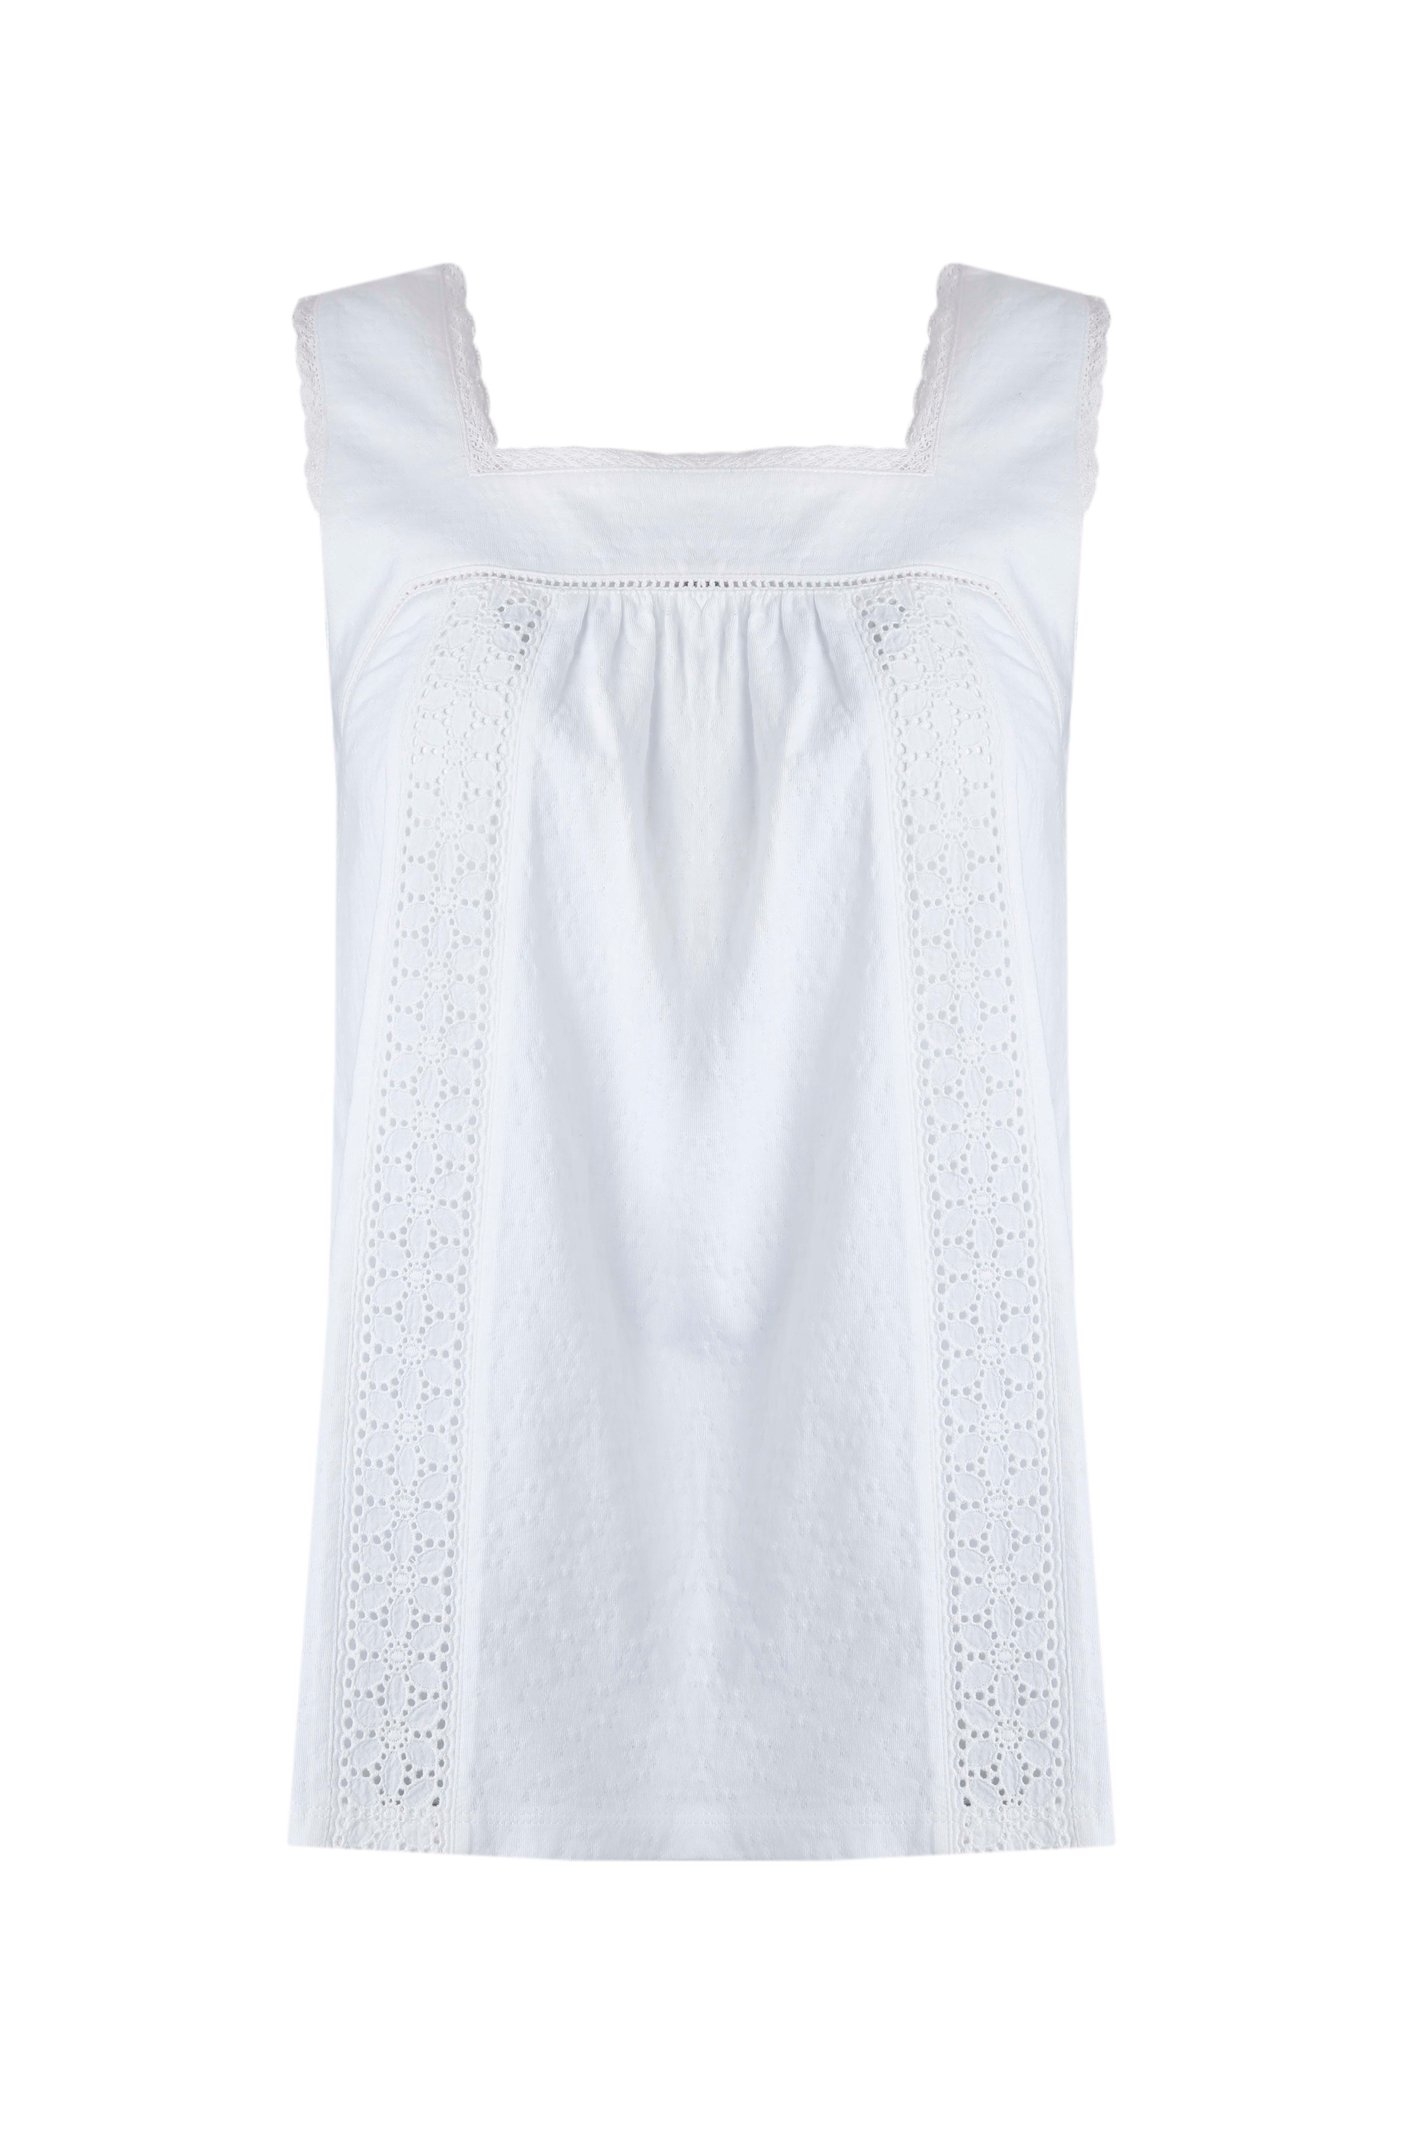 Weird Fish Chelle Organic Cotton Jersey Vest White Size 16